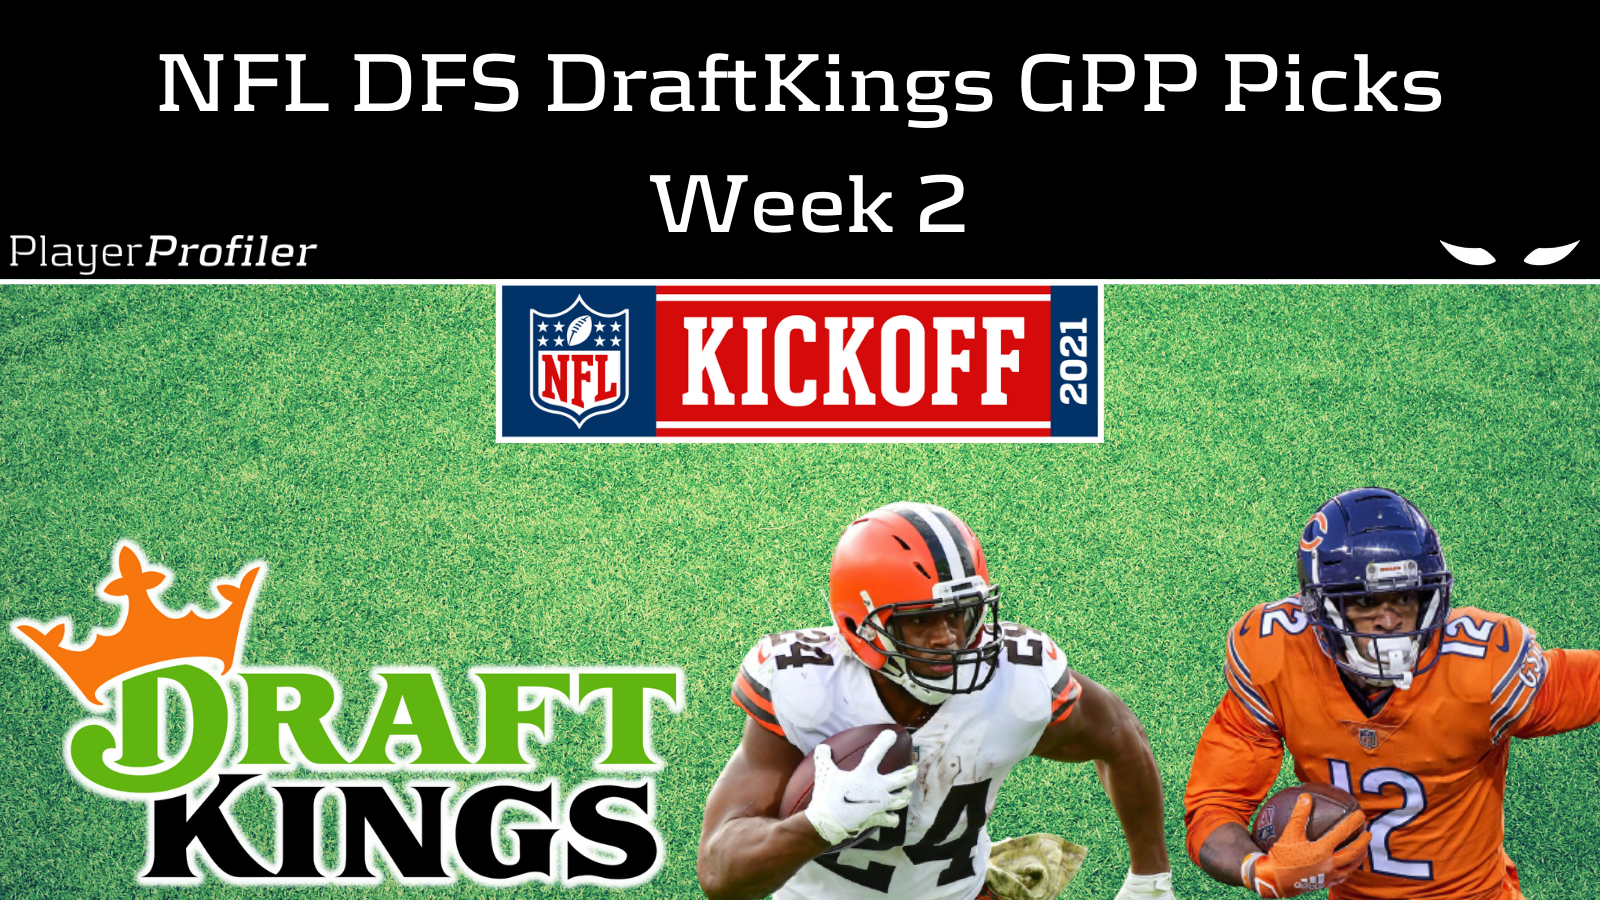 The Best NFL DFS DraftKings GPP Picks For Week 2